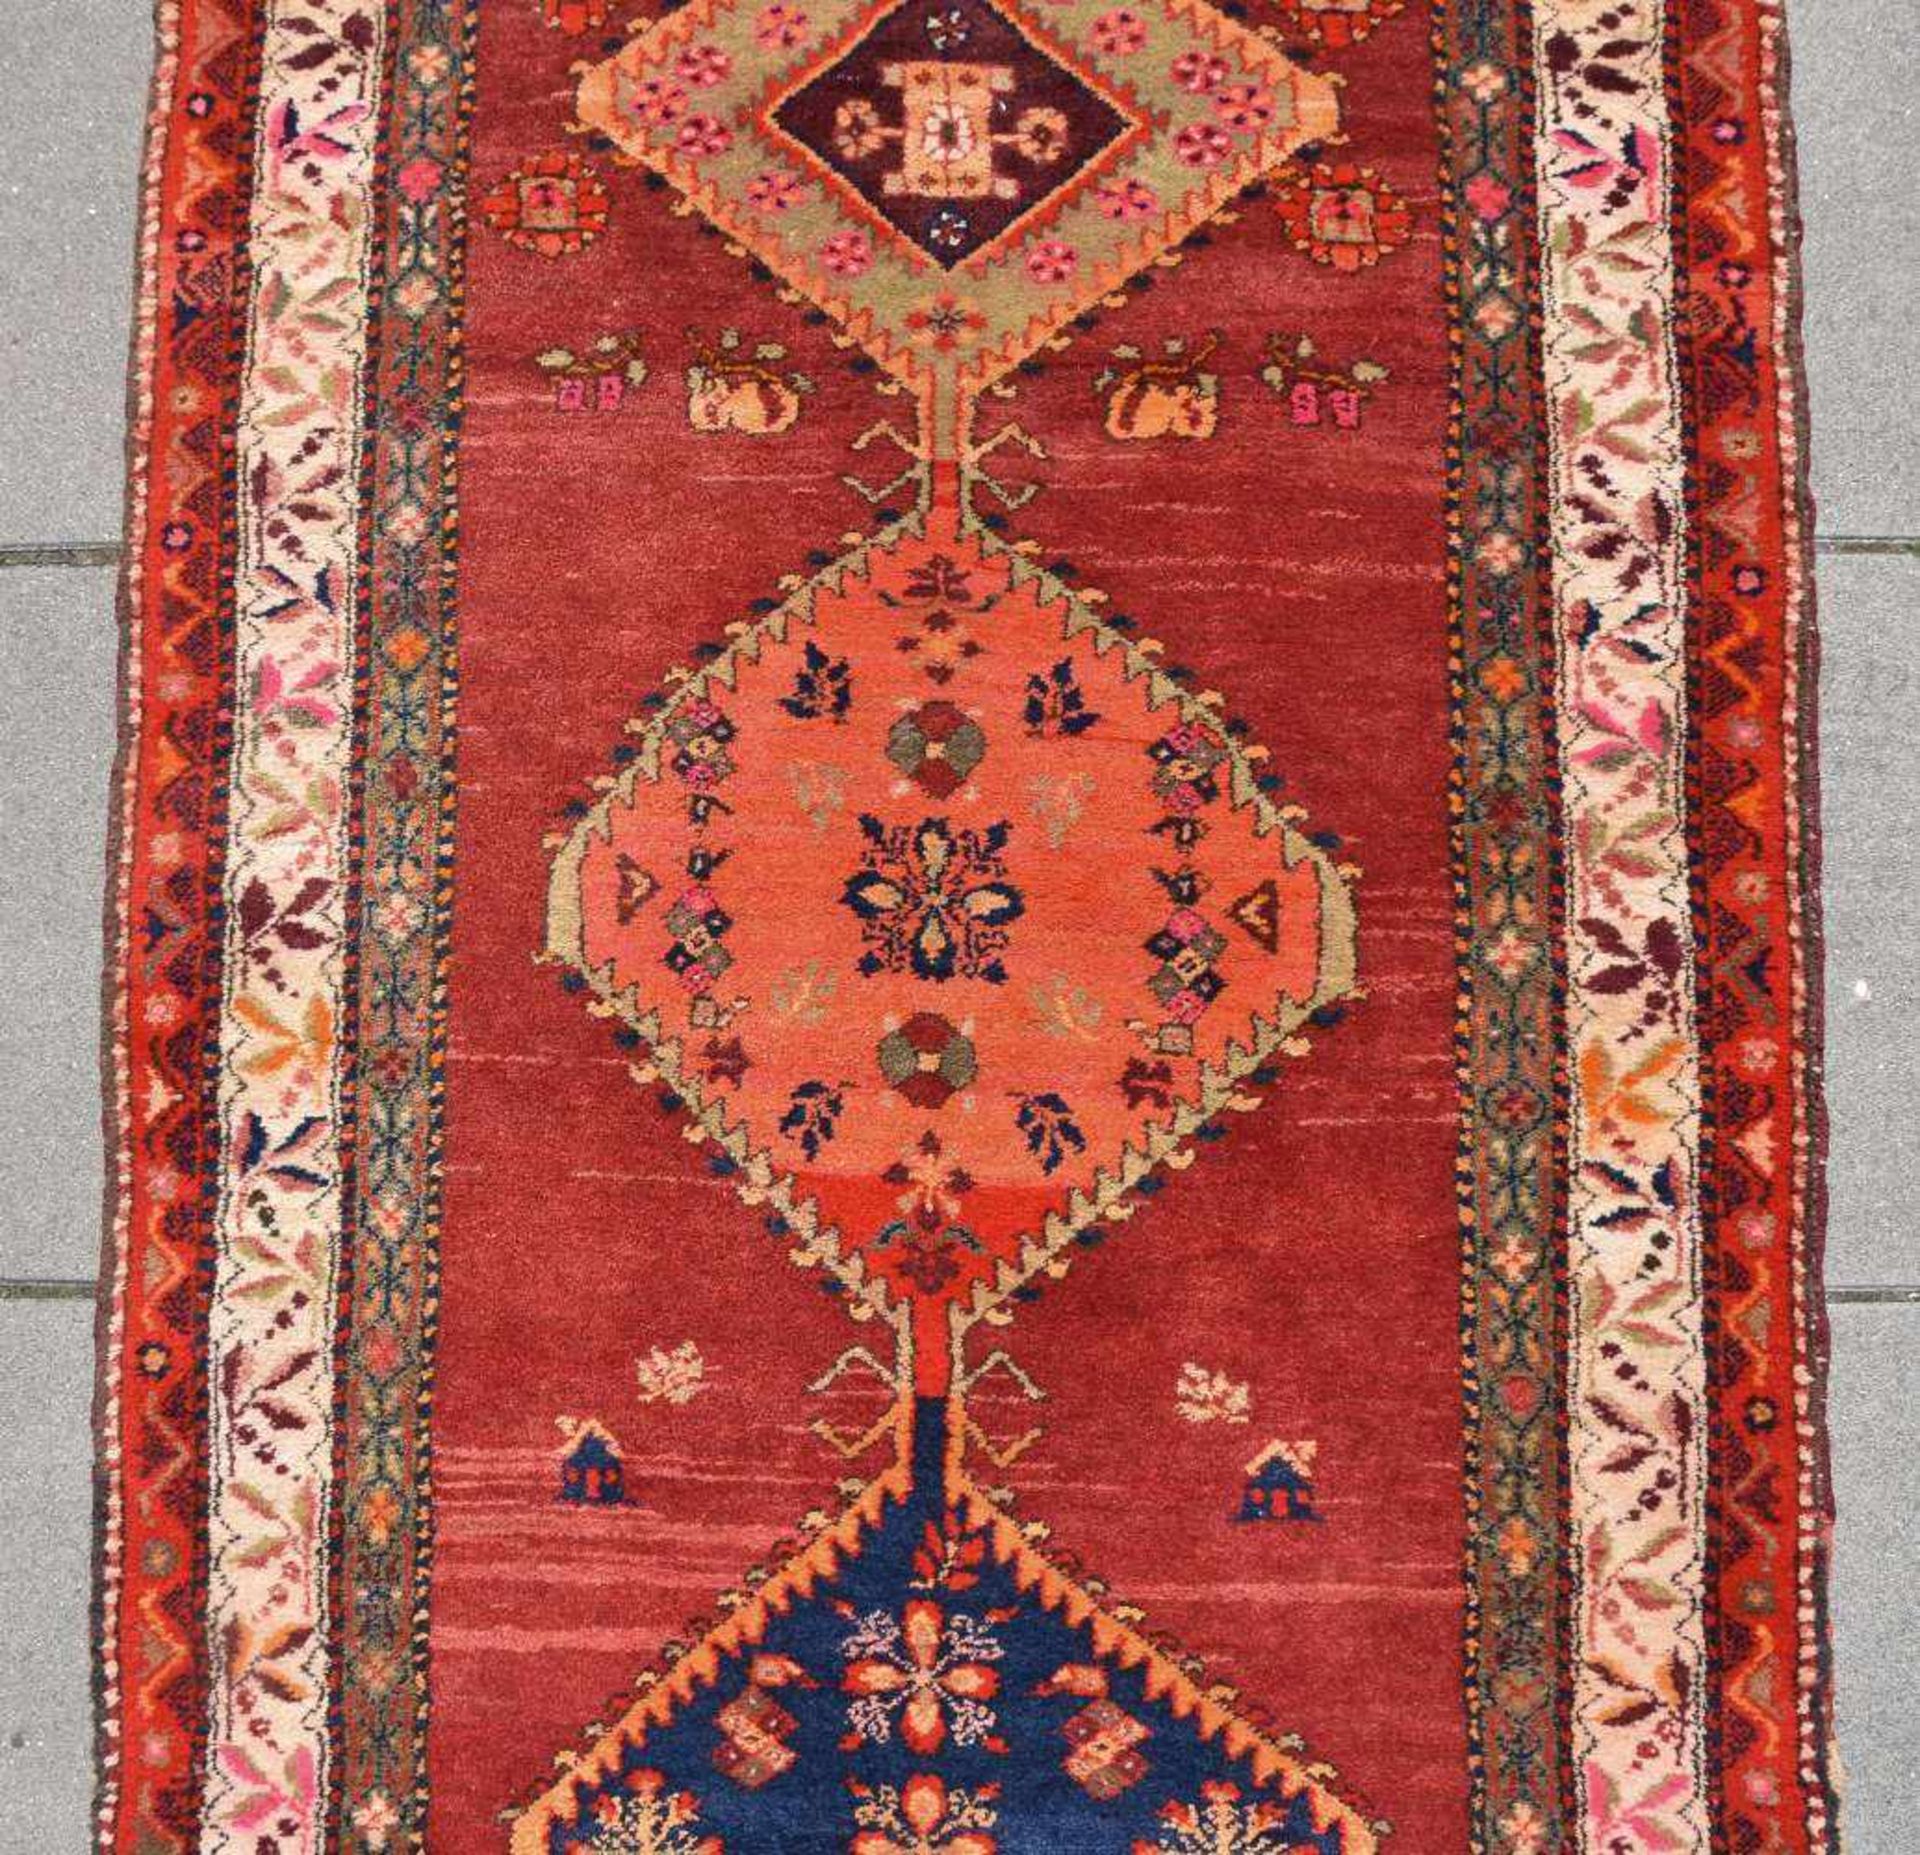 TEPPICH LÄUFER, Wolle, Iran 20. Jahrhundert Maße: 355 x 108 cm. Altersspuren. Gebrauchsspuren - Bild 3 aus 8